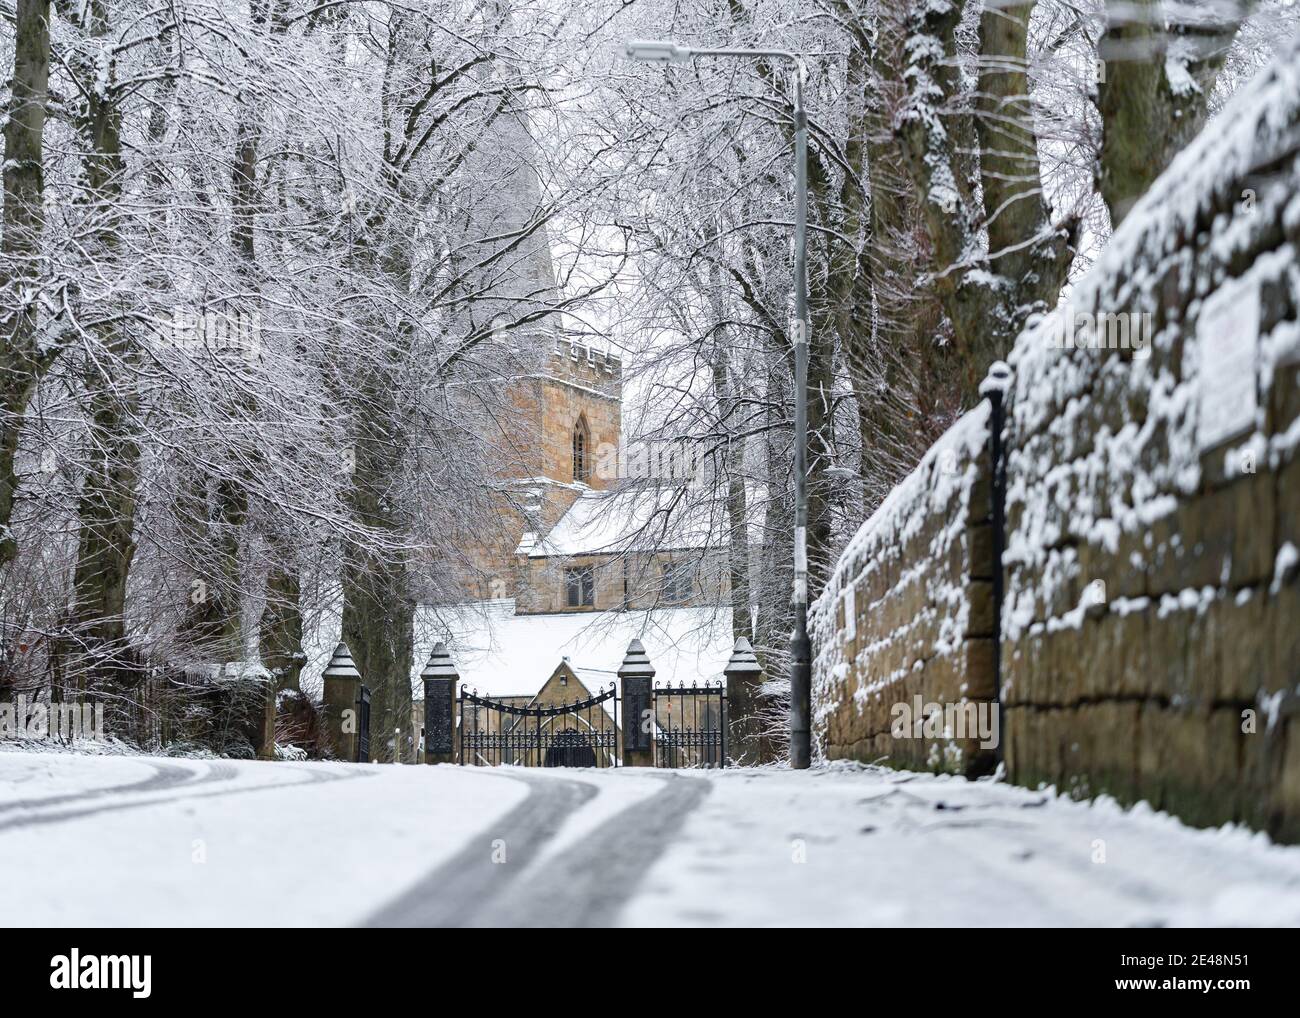 Inverno una bella scena di chiesa di villaggio con la neve profonda caduta sul tetto e vialetto nevoso si stabilì con alberi di pietra Muro in città Sutton in Ashfield Foto Stock